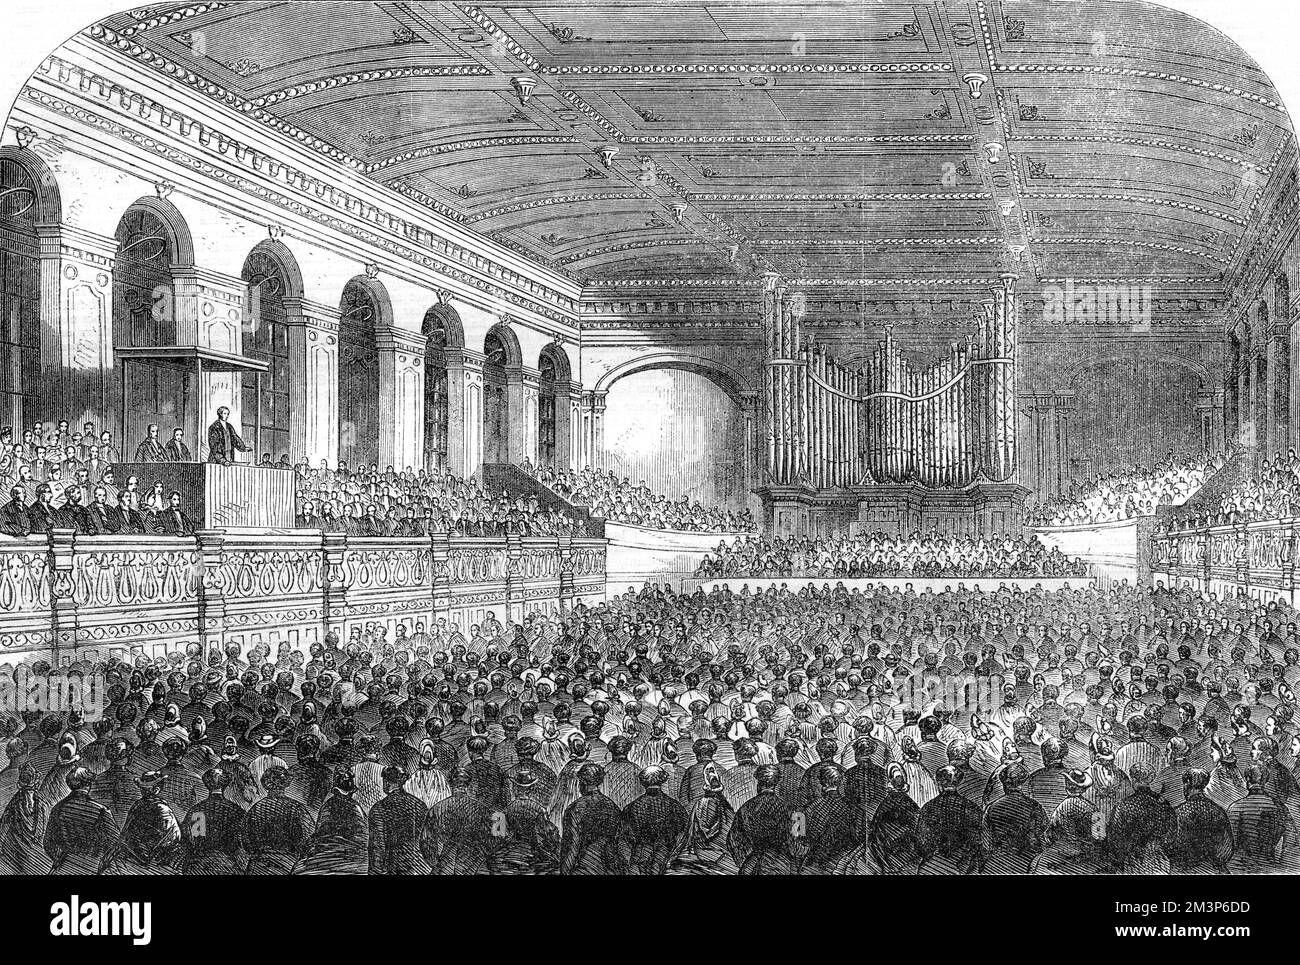 À l'hôtel de ville, Sir William Armstrong prononce le discours d'ouverture de la réunion de la British Association à Newcastle-on-Tyne Date : septembre 1863 Banque D'Images